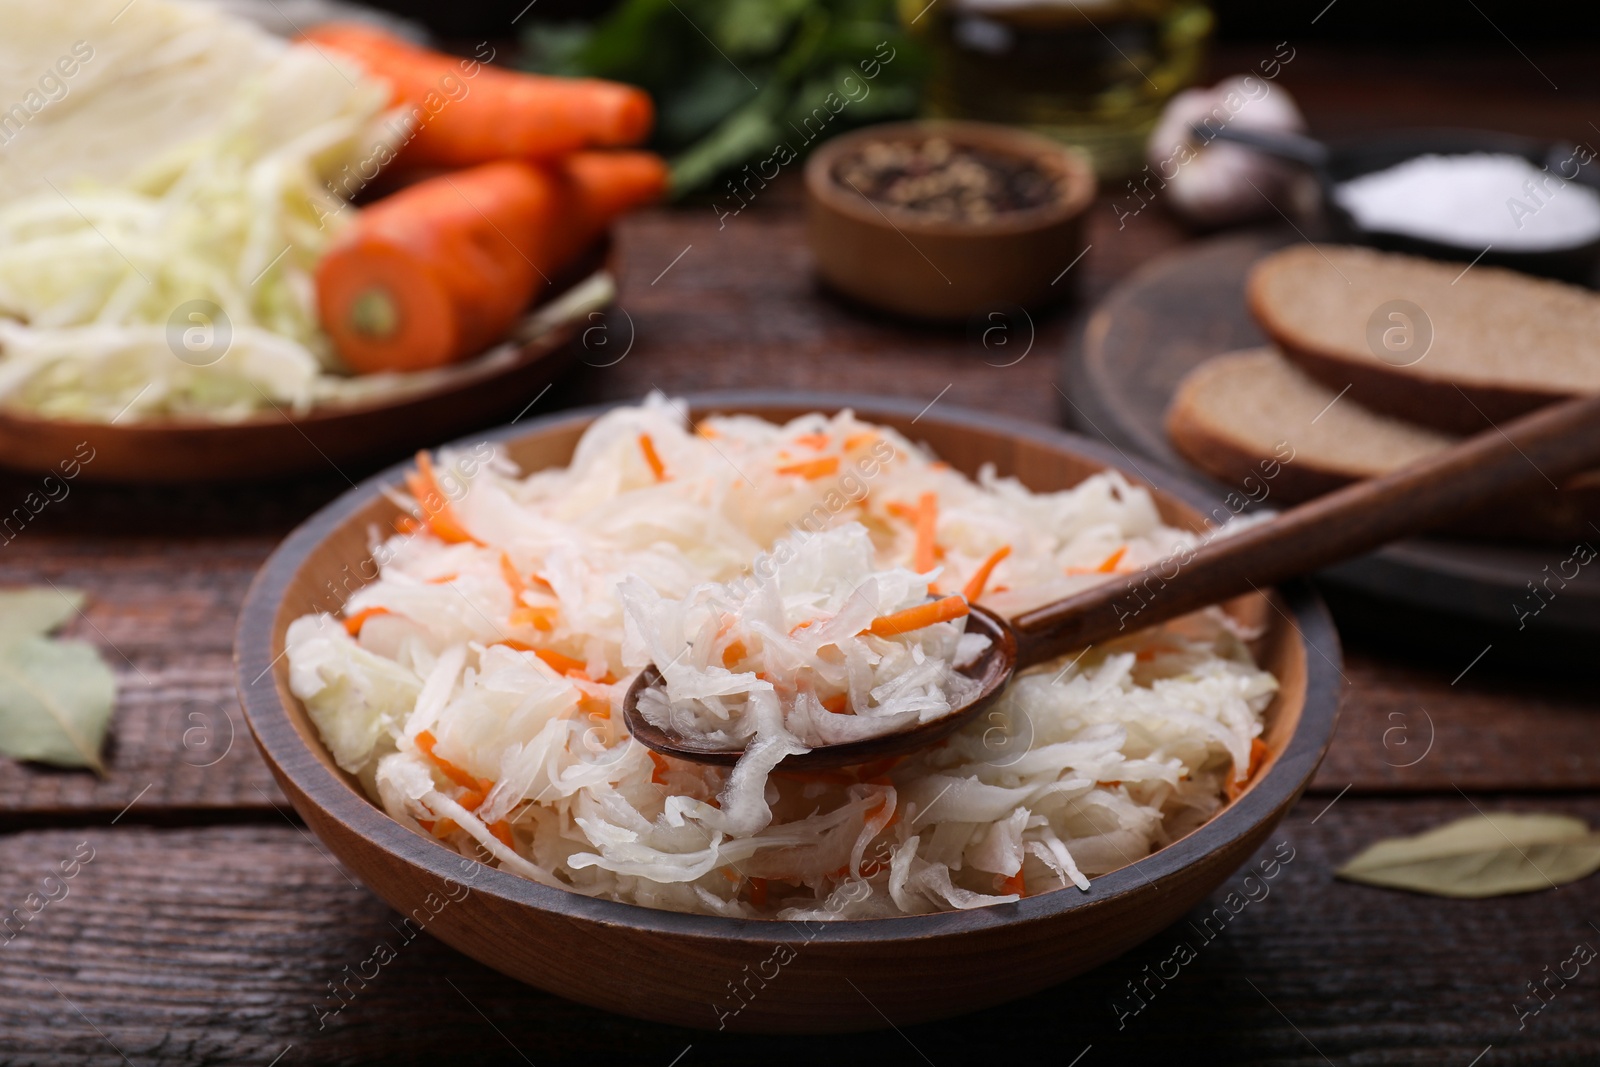 Photo of Bowl of tasty sauerkraut on wooden table, closeup